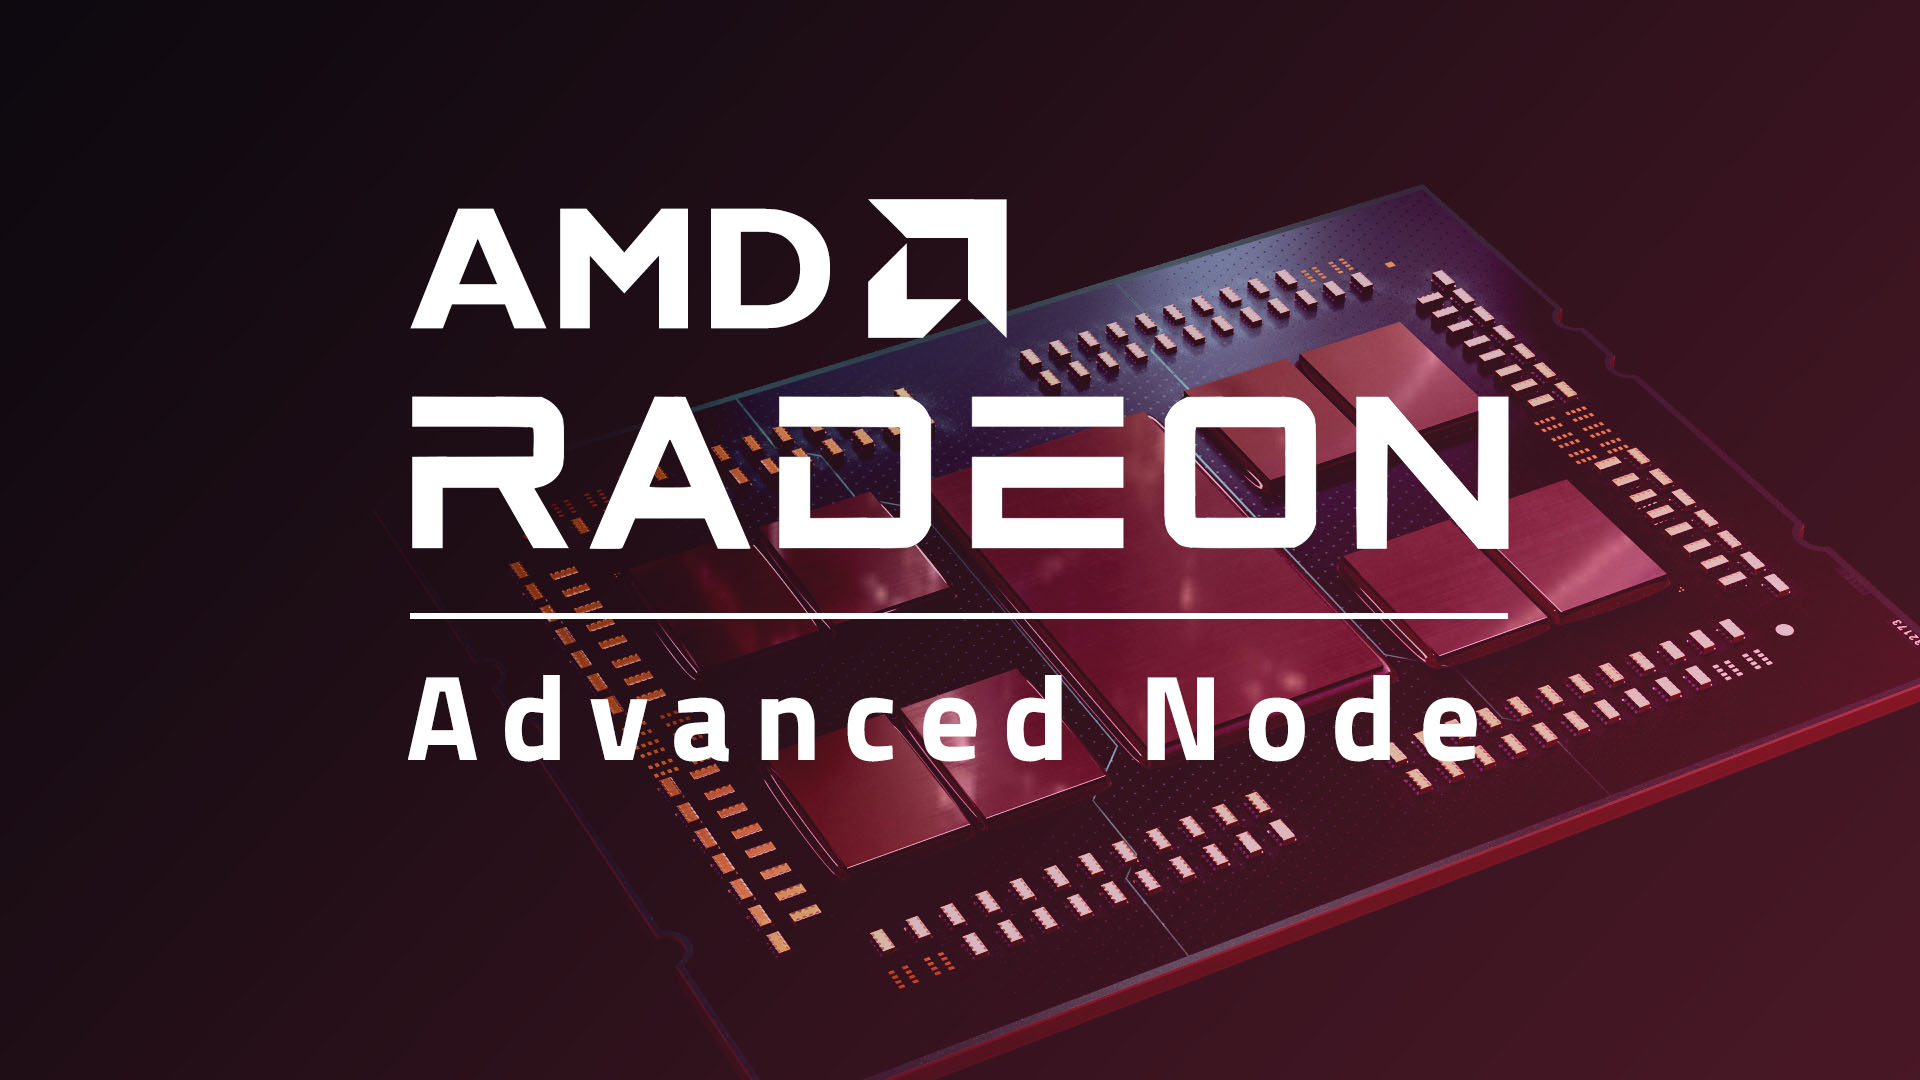 Advanced node